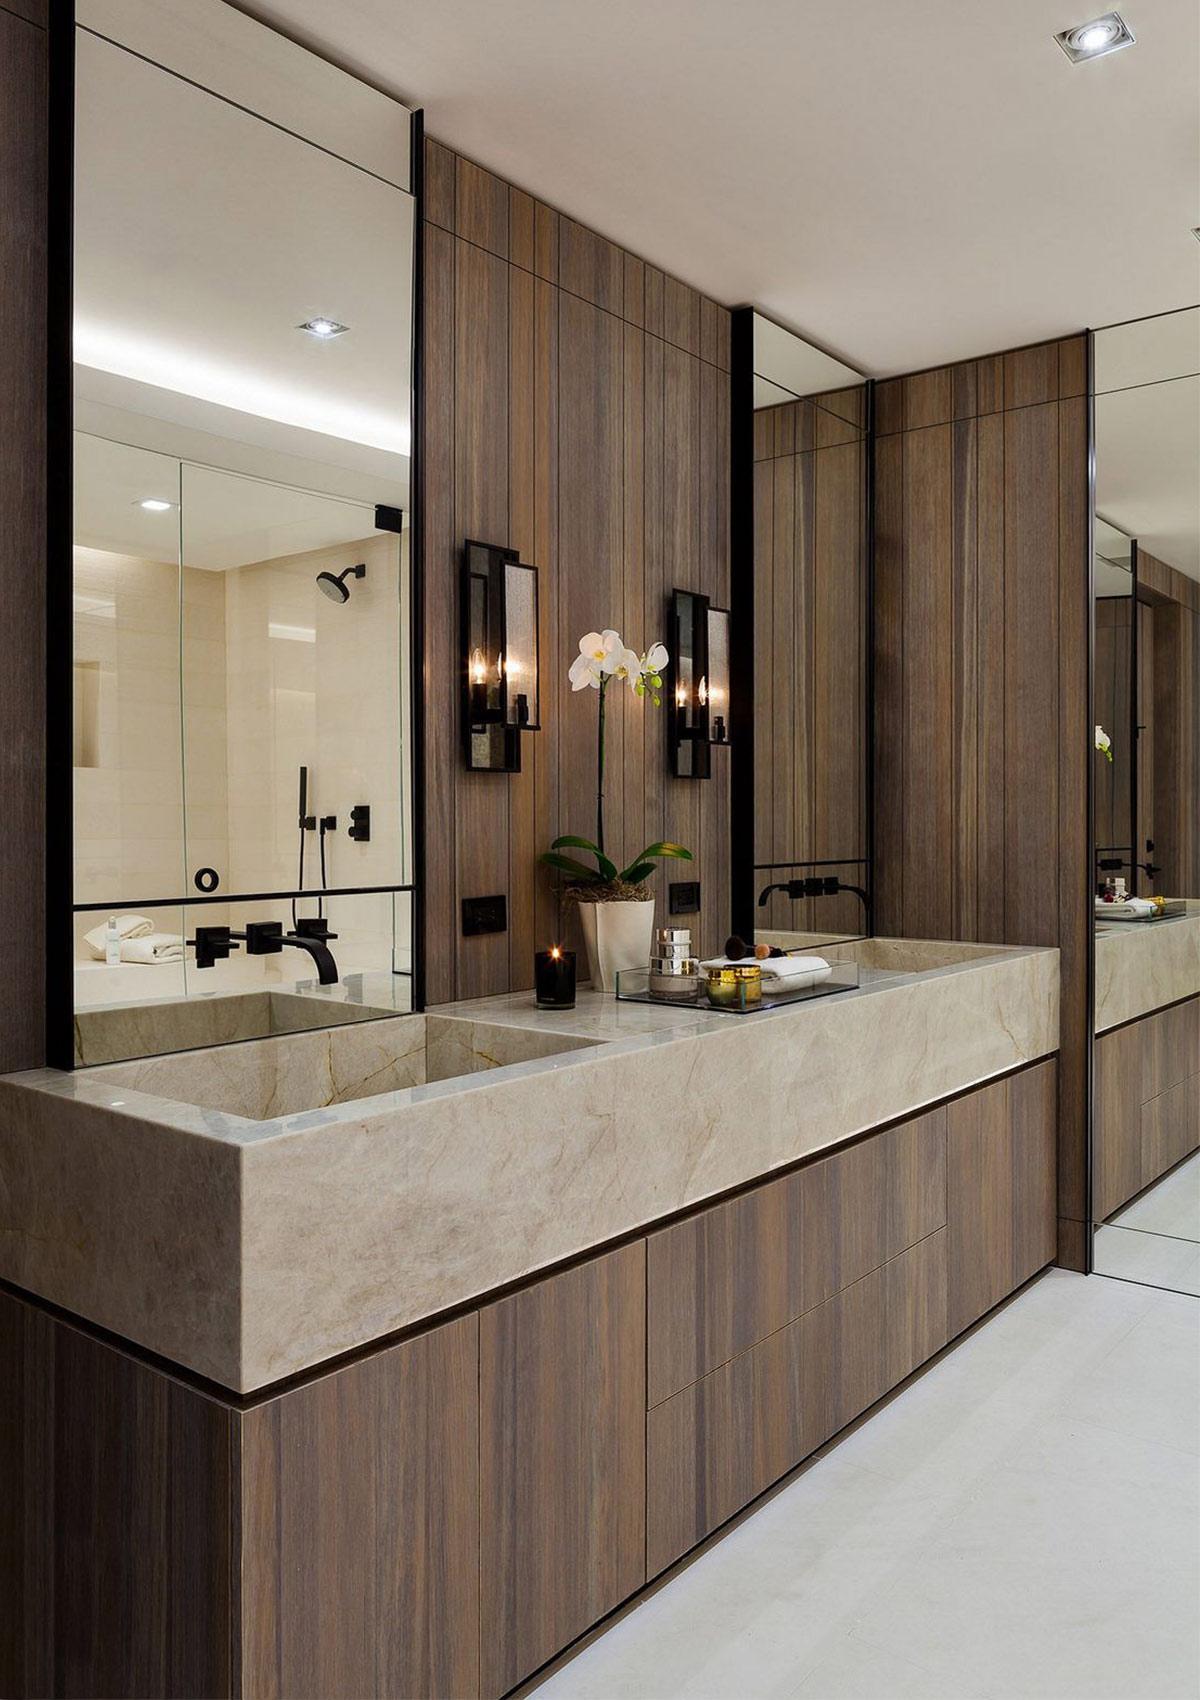 Lựa chọn chất liệu đá cẩm thạch trong thiết kế nội thất nhà ở căn hộ